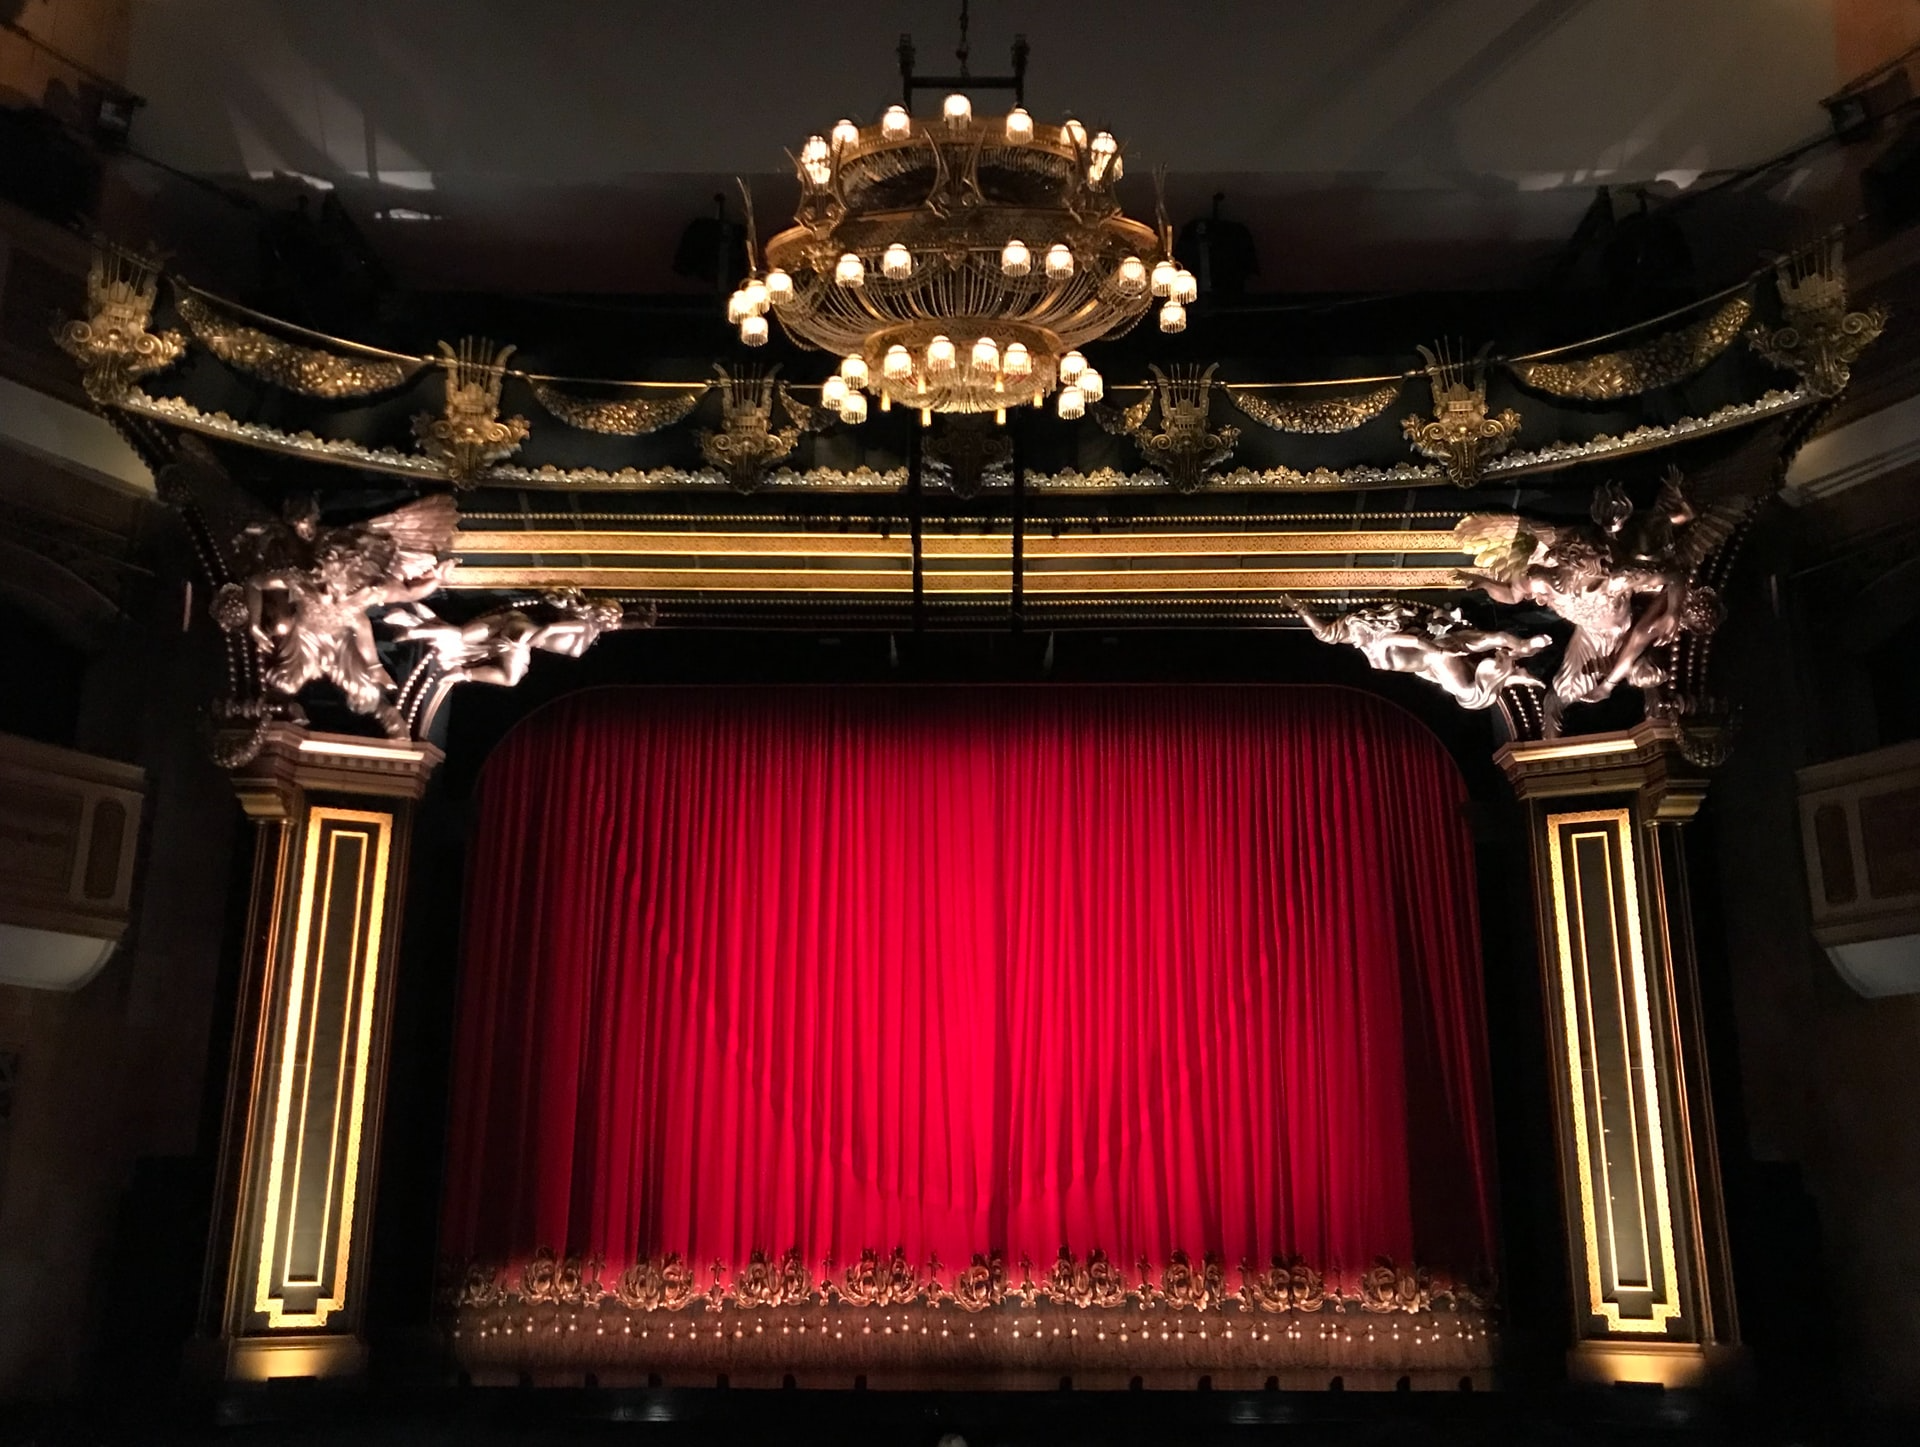 Sicht auf Theaterbühne mit rotem Vorhang. Oben prächtiger Kronleuchter, düstere Lichtstimmung.